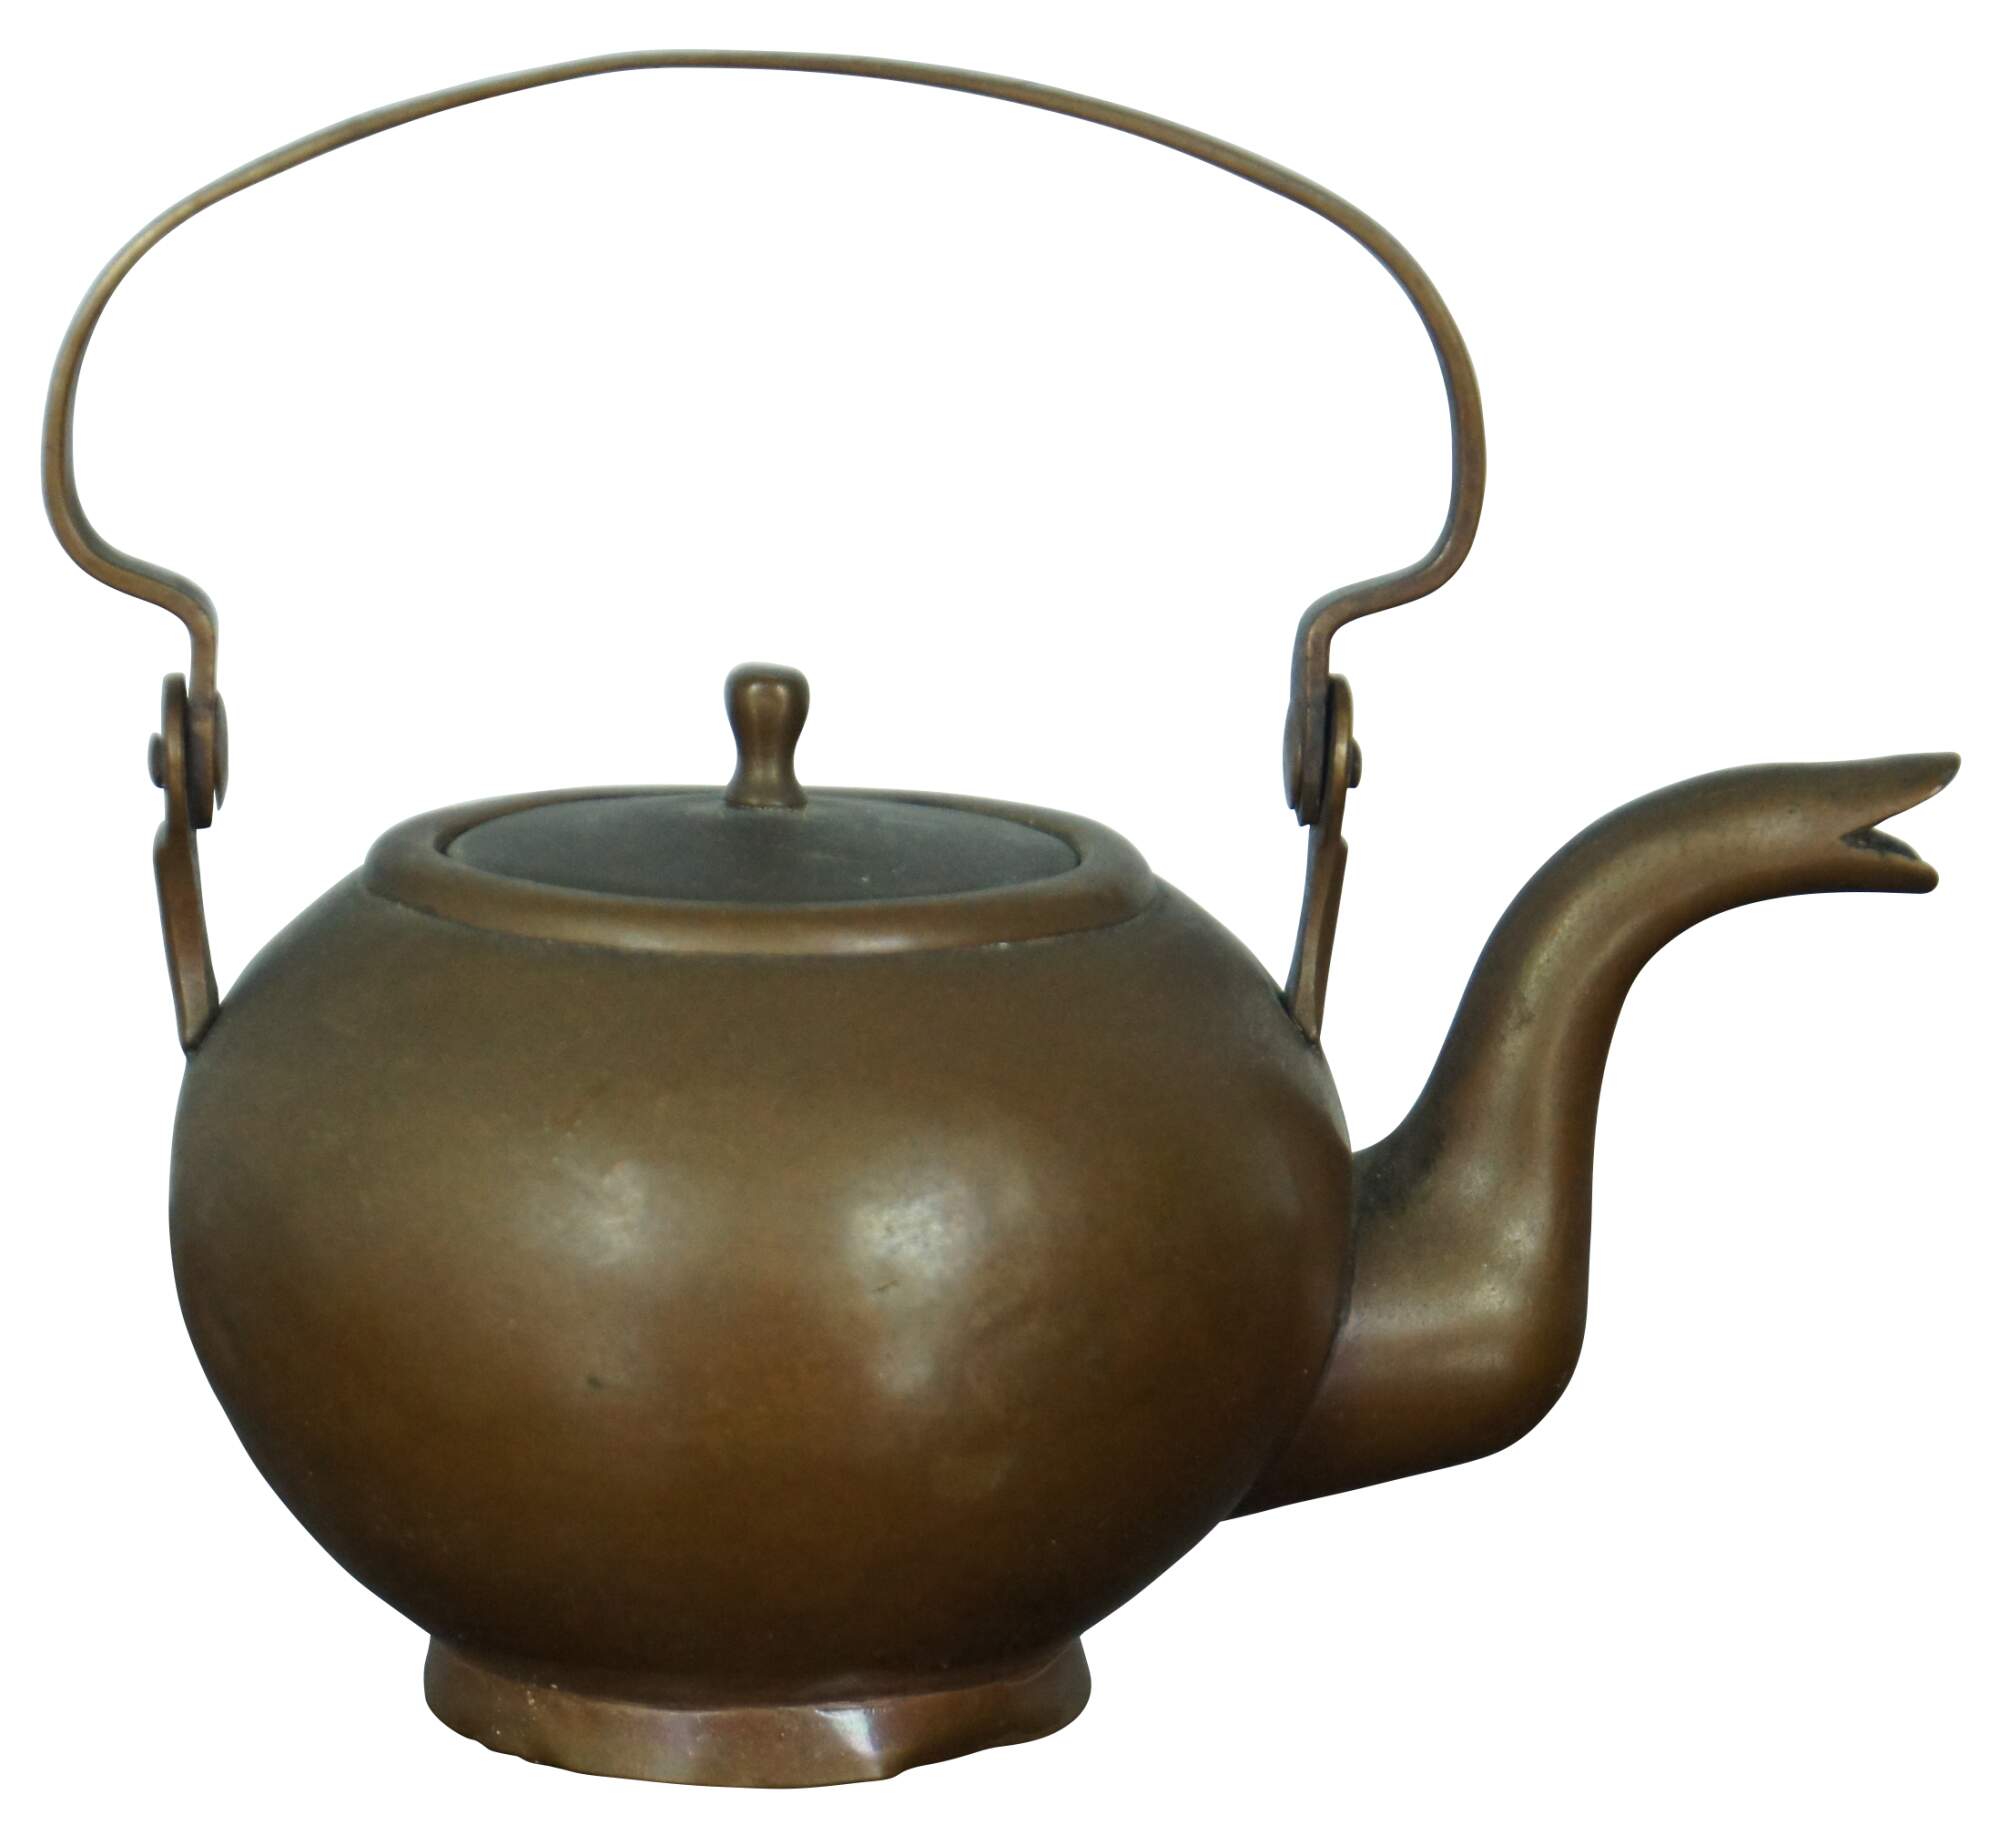 Antique Miniature Copper Teapot Tea Kettle Child's Small Personal Size  Primitive